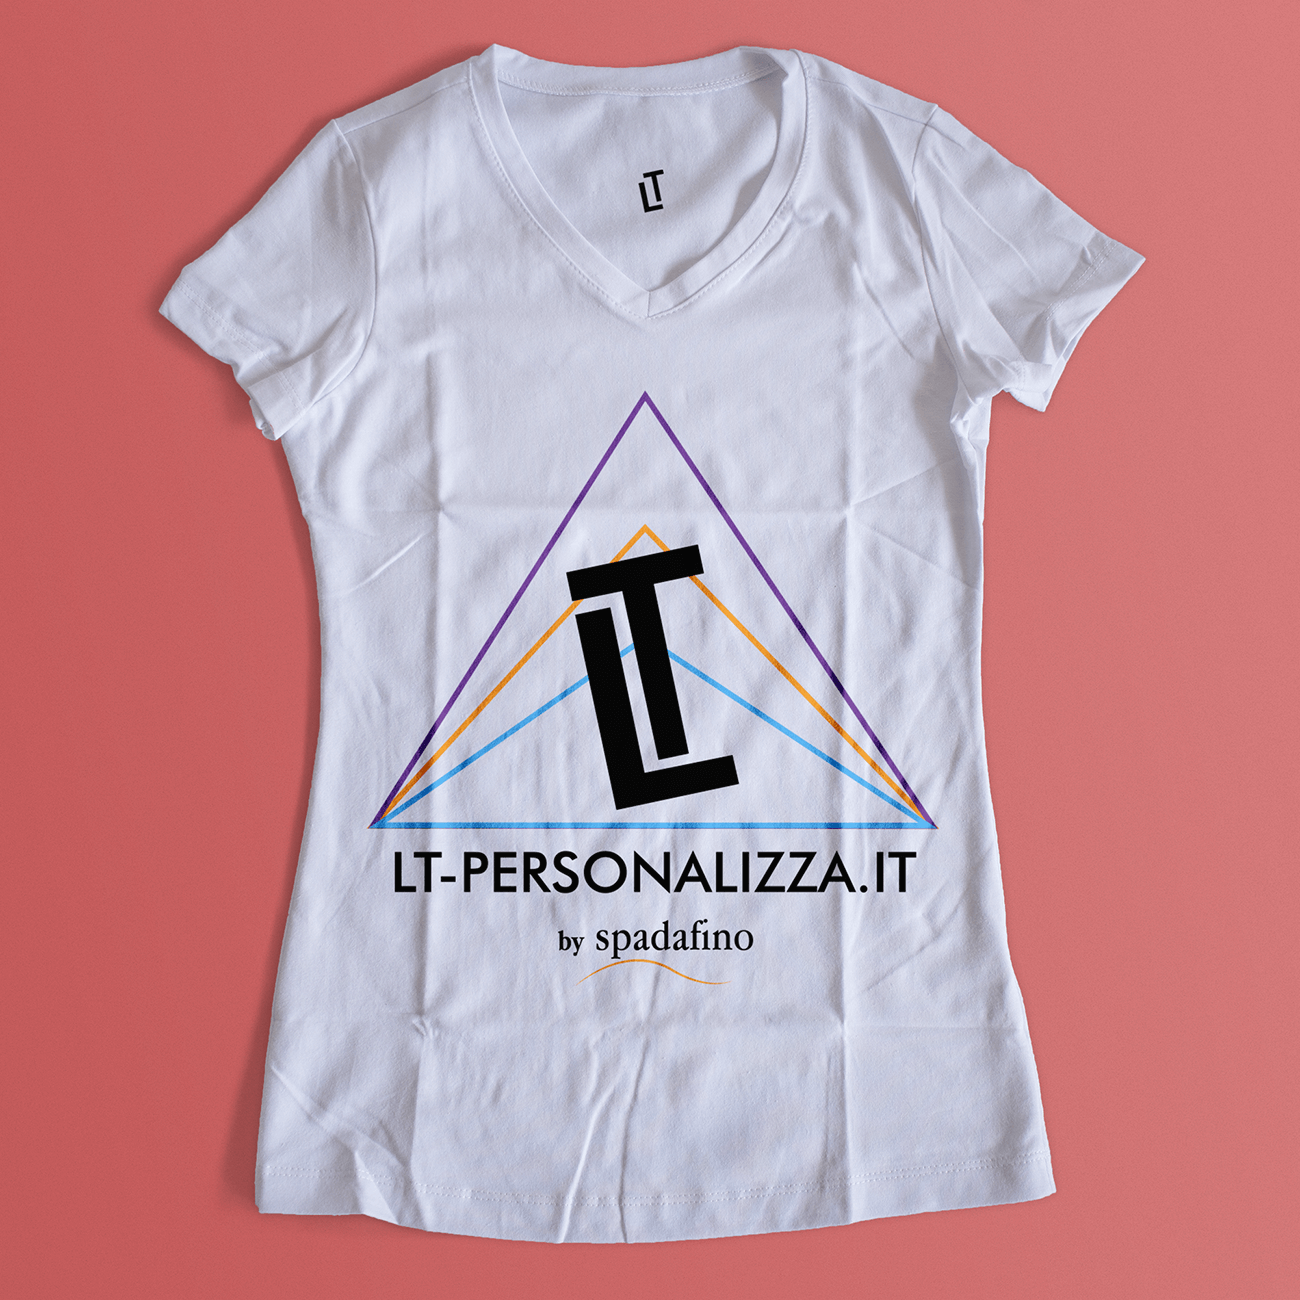 Lt-personalizza